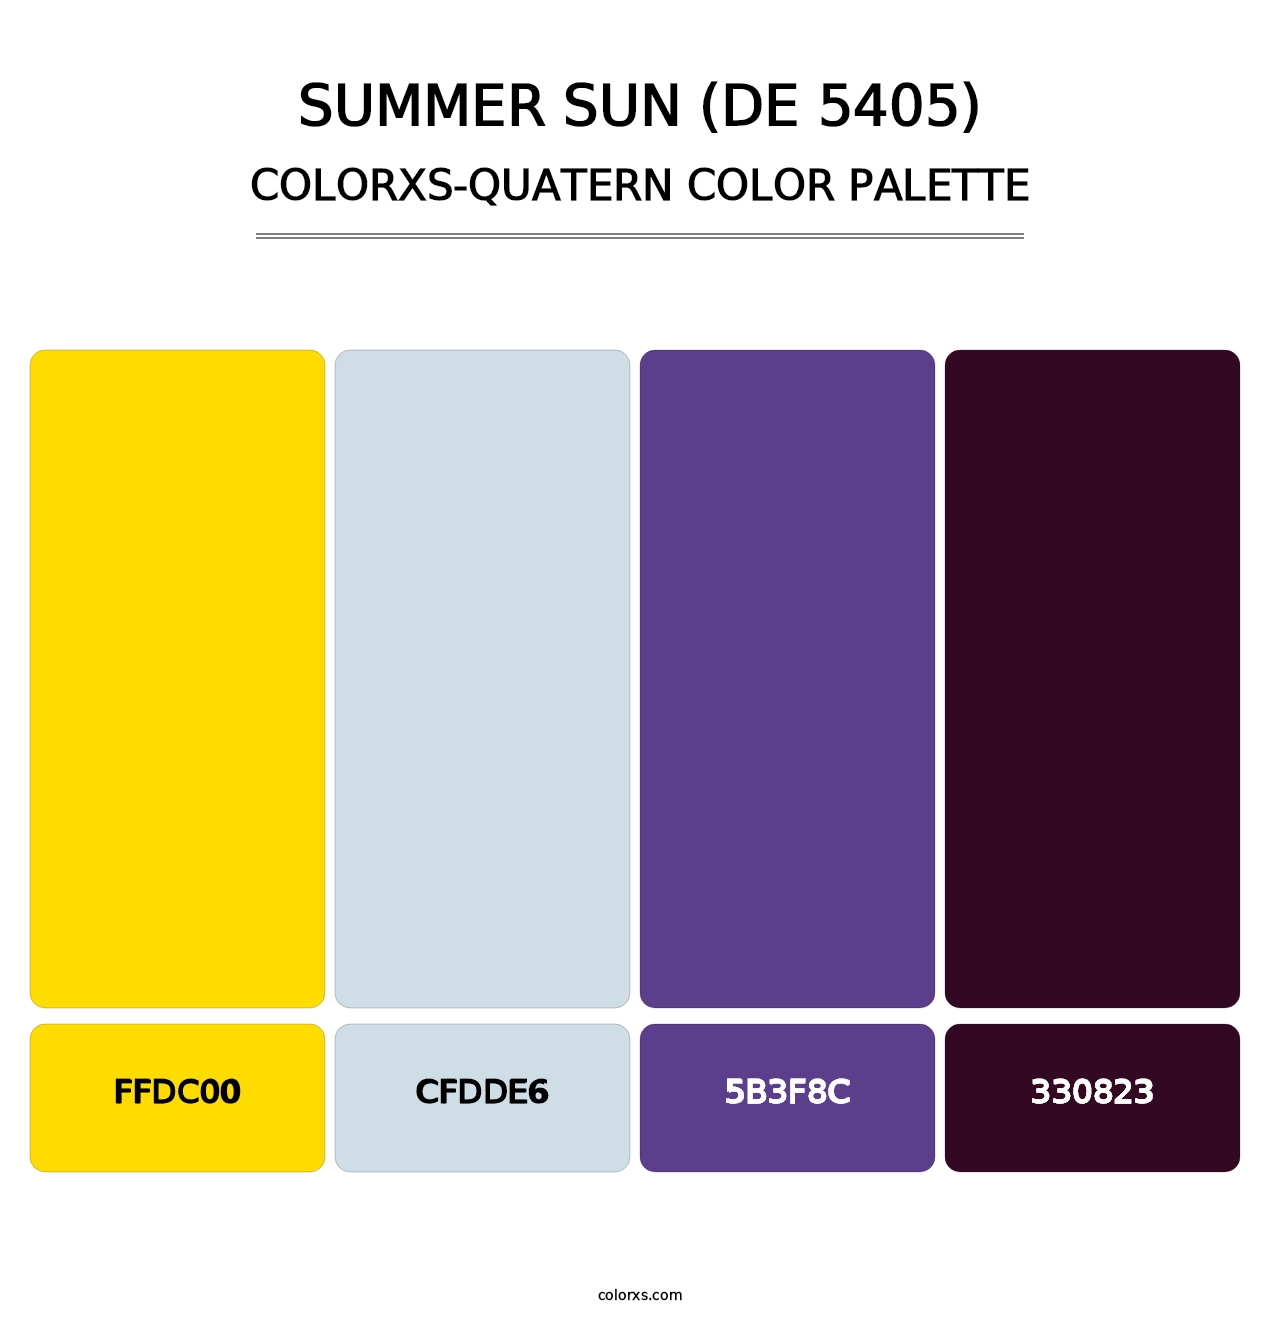 Summer Sun (DE 5405) - Colorxs Quatern Palette